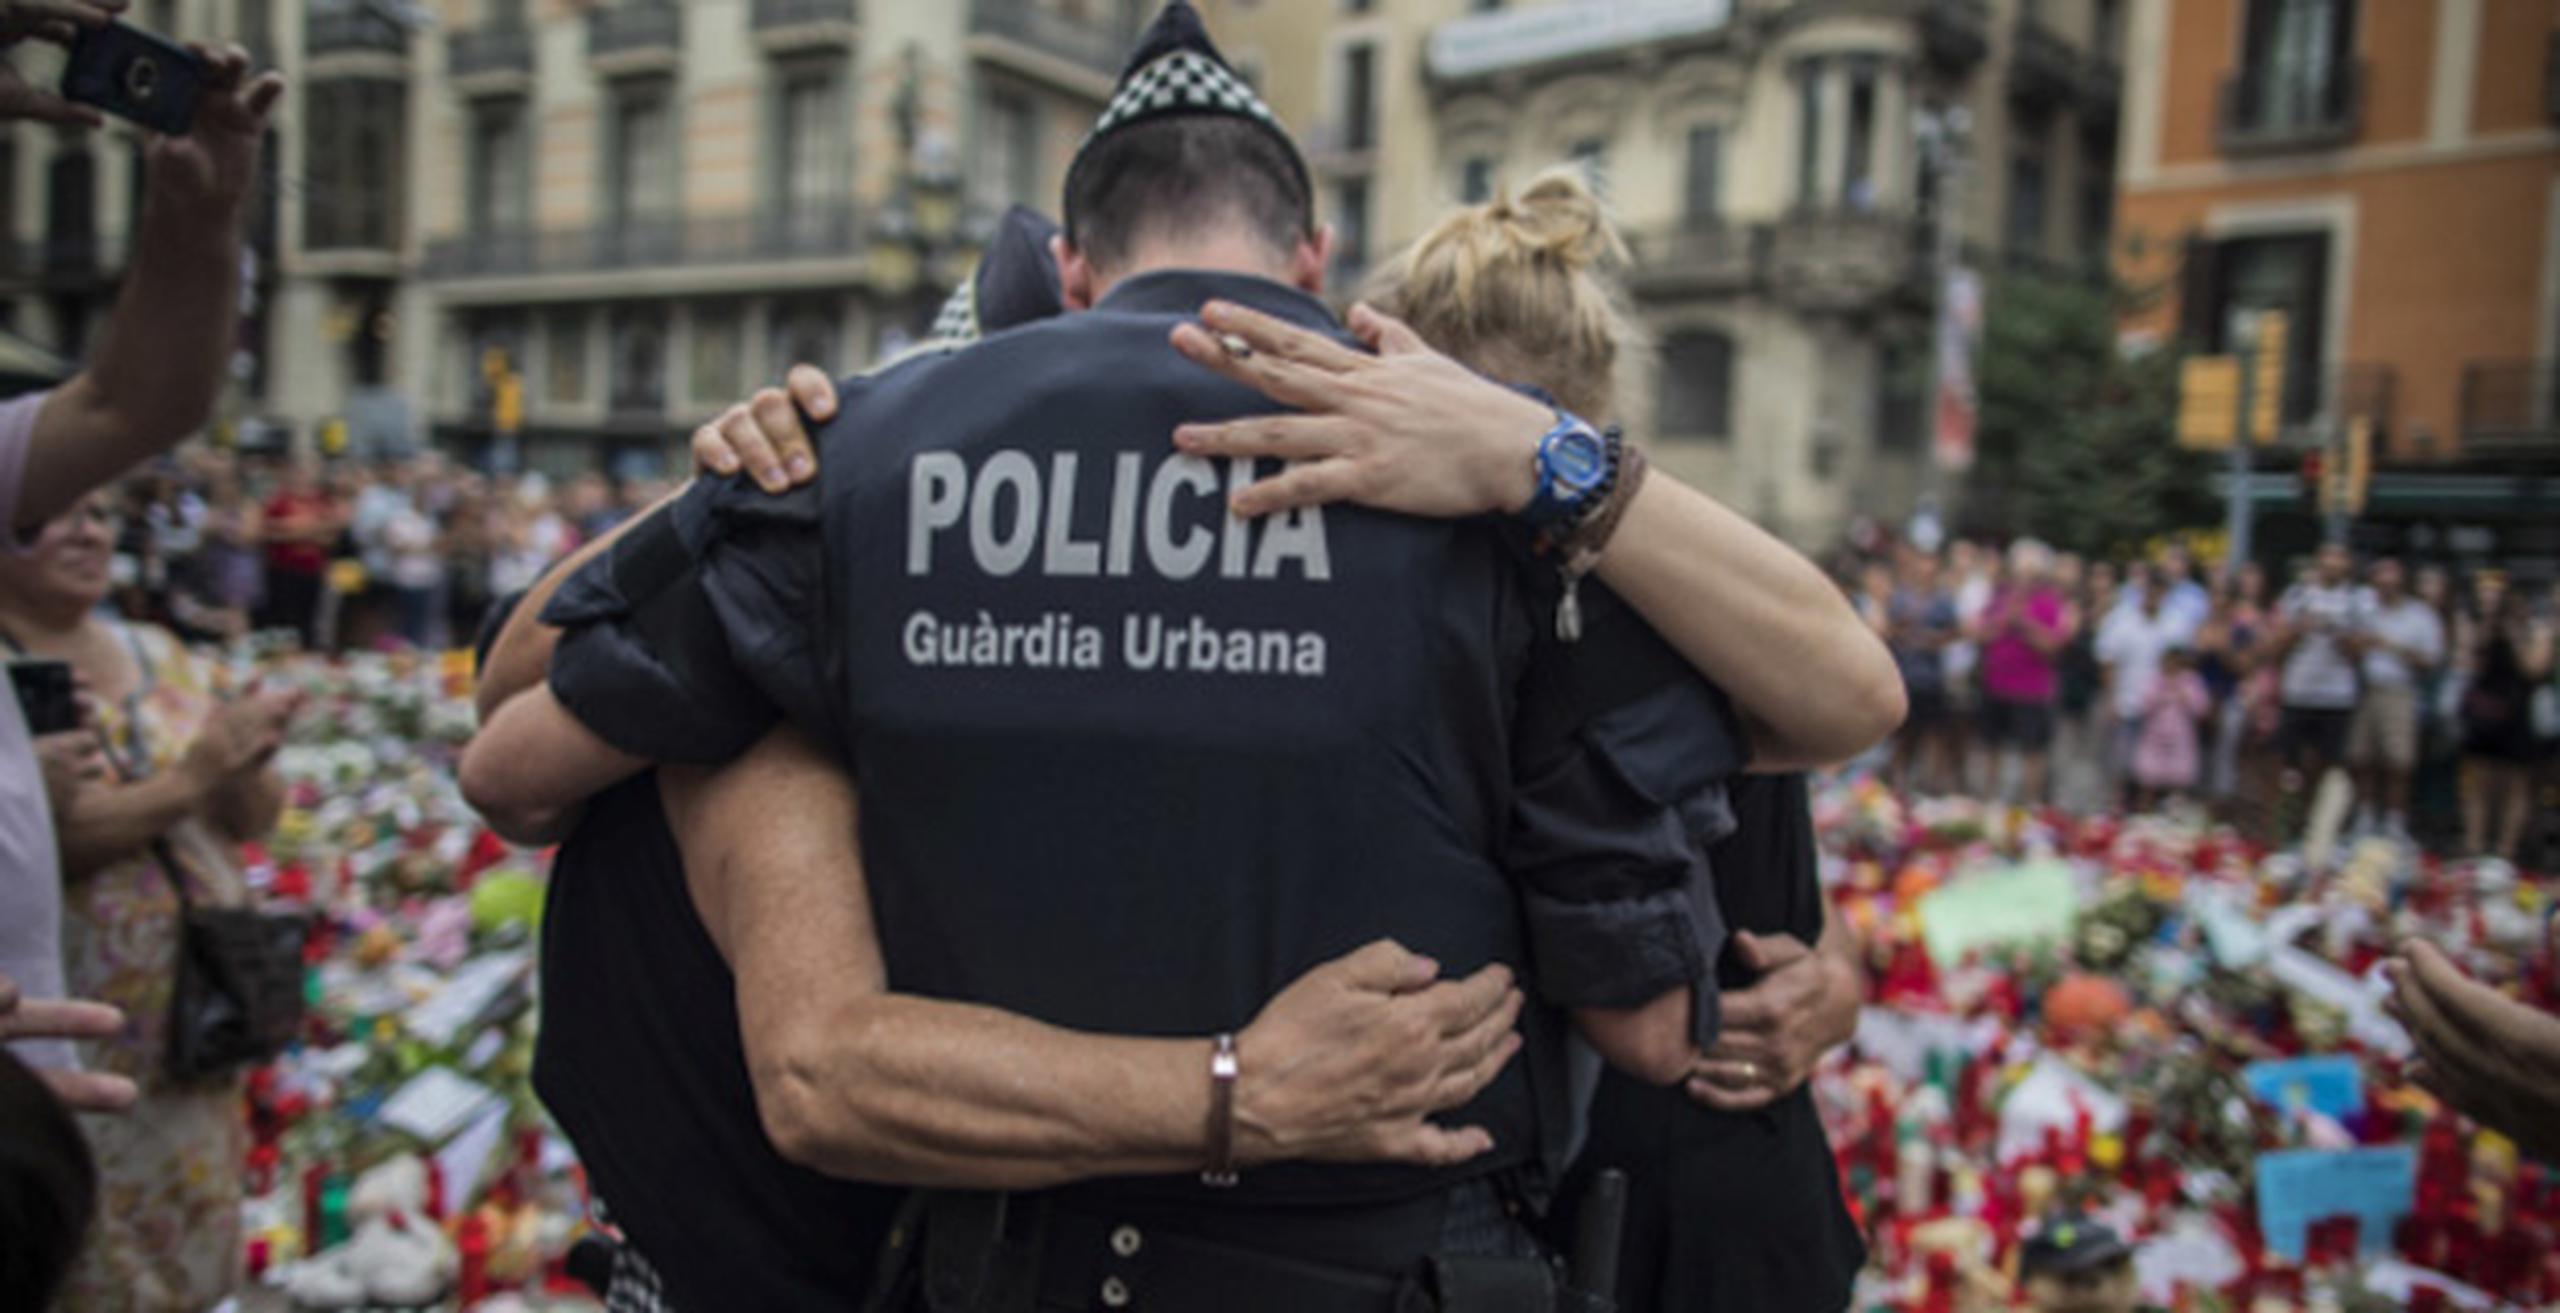 Las autoridades españolas dicen haber detenido a 201 sospechosos de yihadismo en España desde que el país elevó su nivel de alerta de seguridad a uno por debajo del máximo a mediados de 2015. (Archivo)